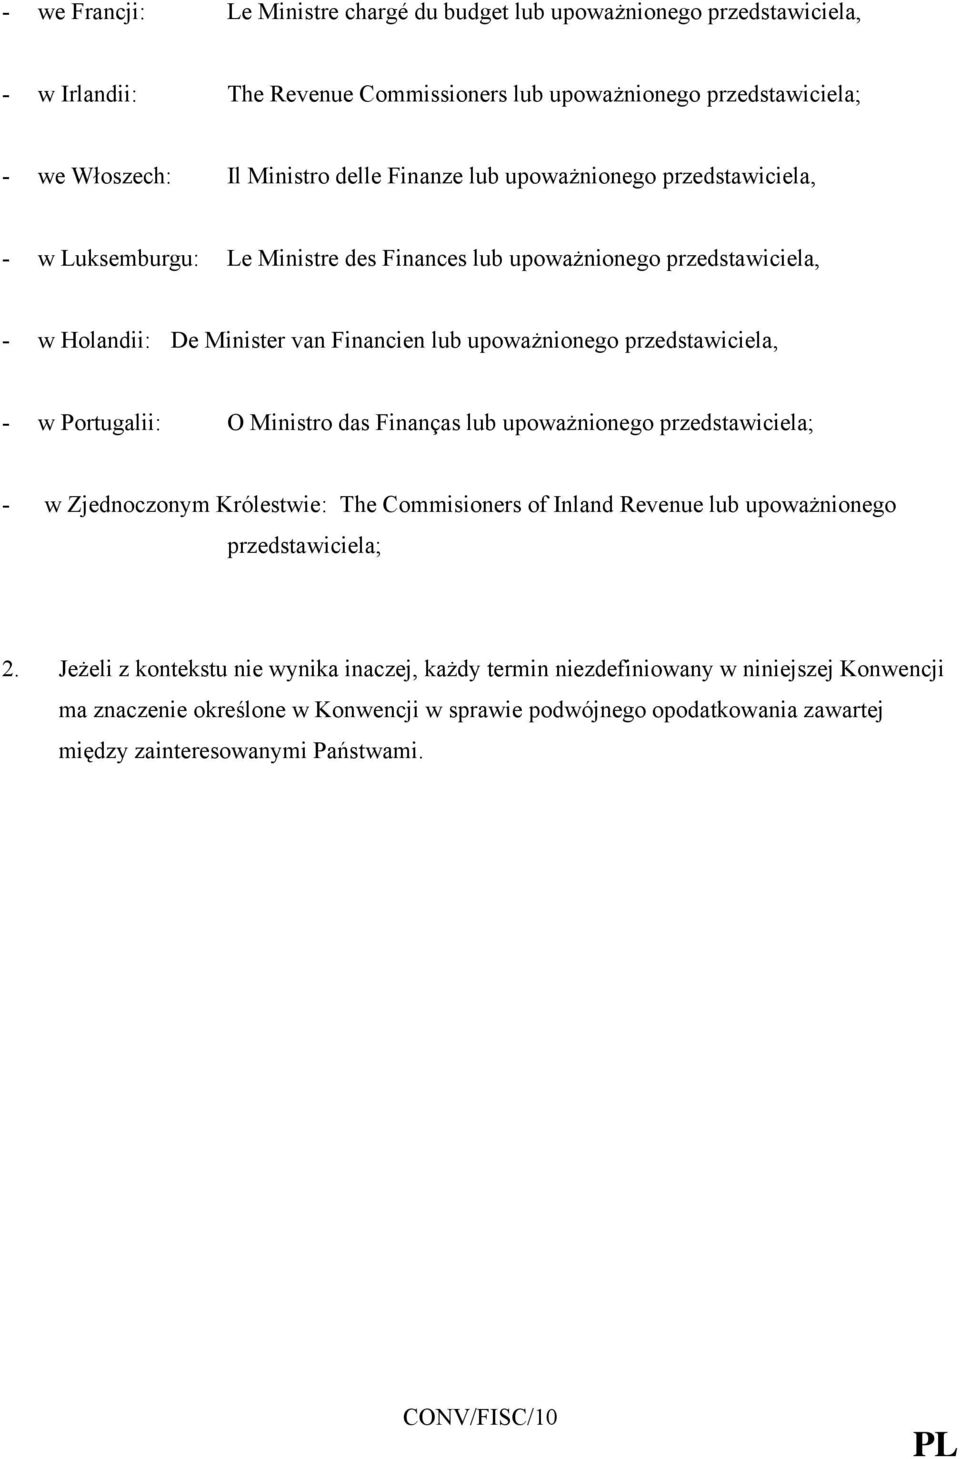 Portugalii: O Ministro das Finanças lub upoważnionego przedstawiciela; - w Zjednoczonym Królestwie: The Commisioners of Inland Revenue lub upoważnionego przedstawiciela; 2.